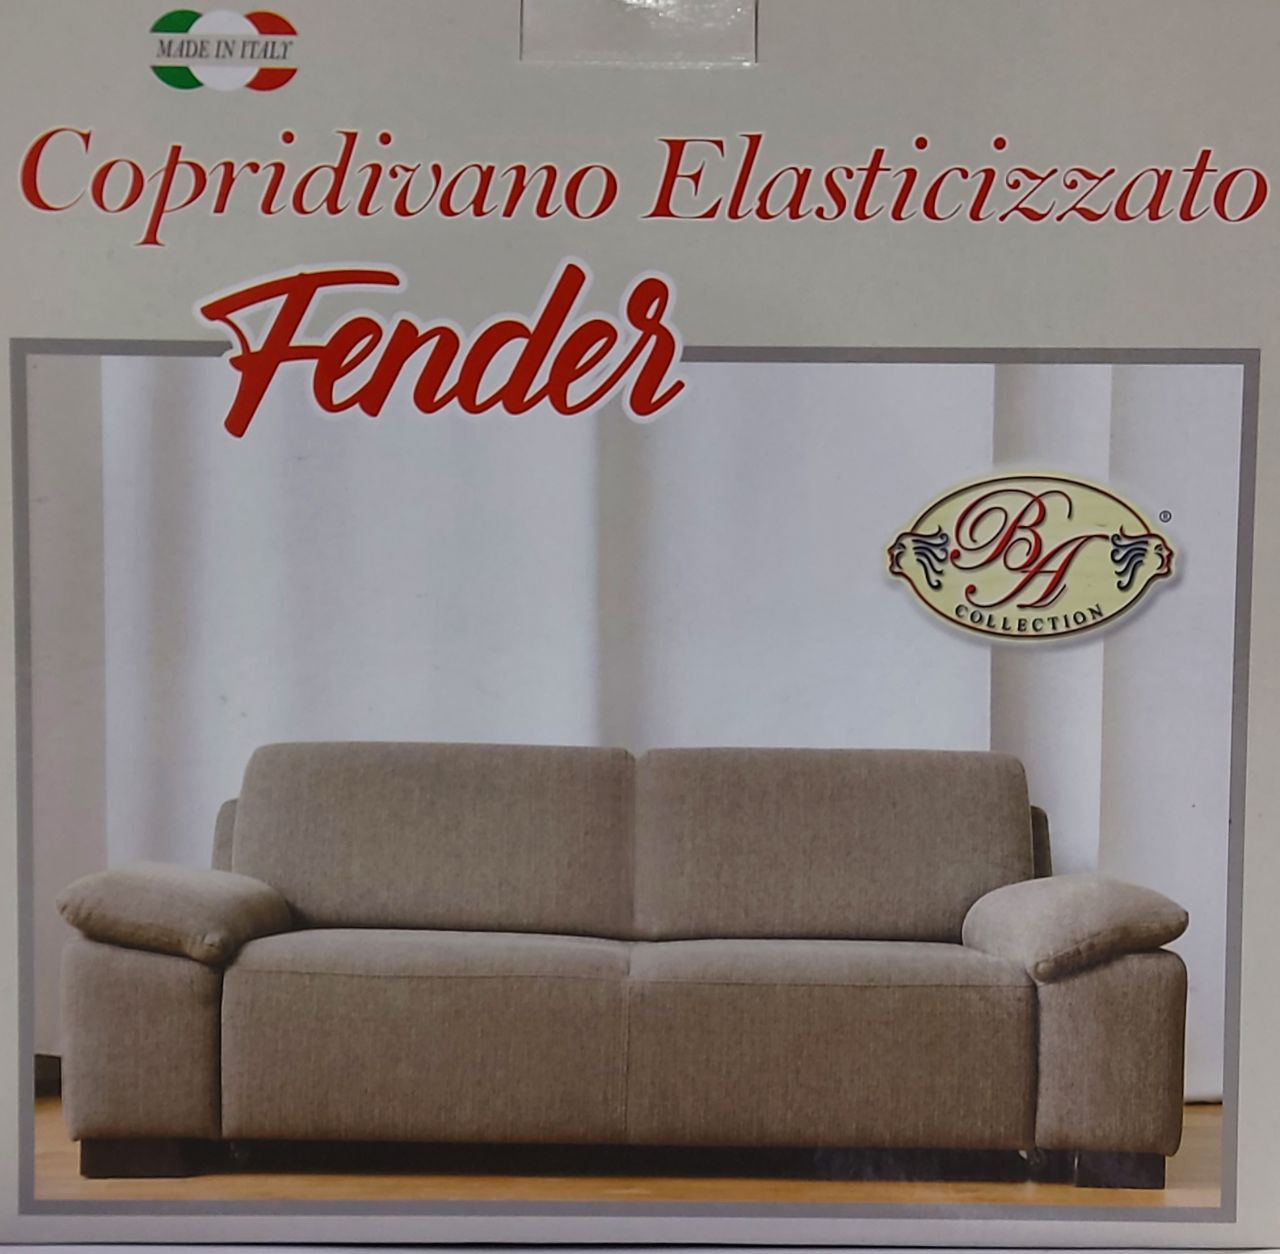 COPRIDIVANO FENDER 3 POSTI-BA COLLECTION ELASTICIZZATO -MADE IN ITALY